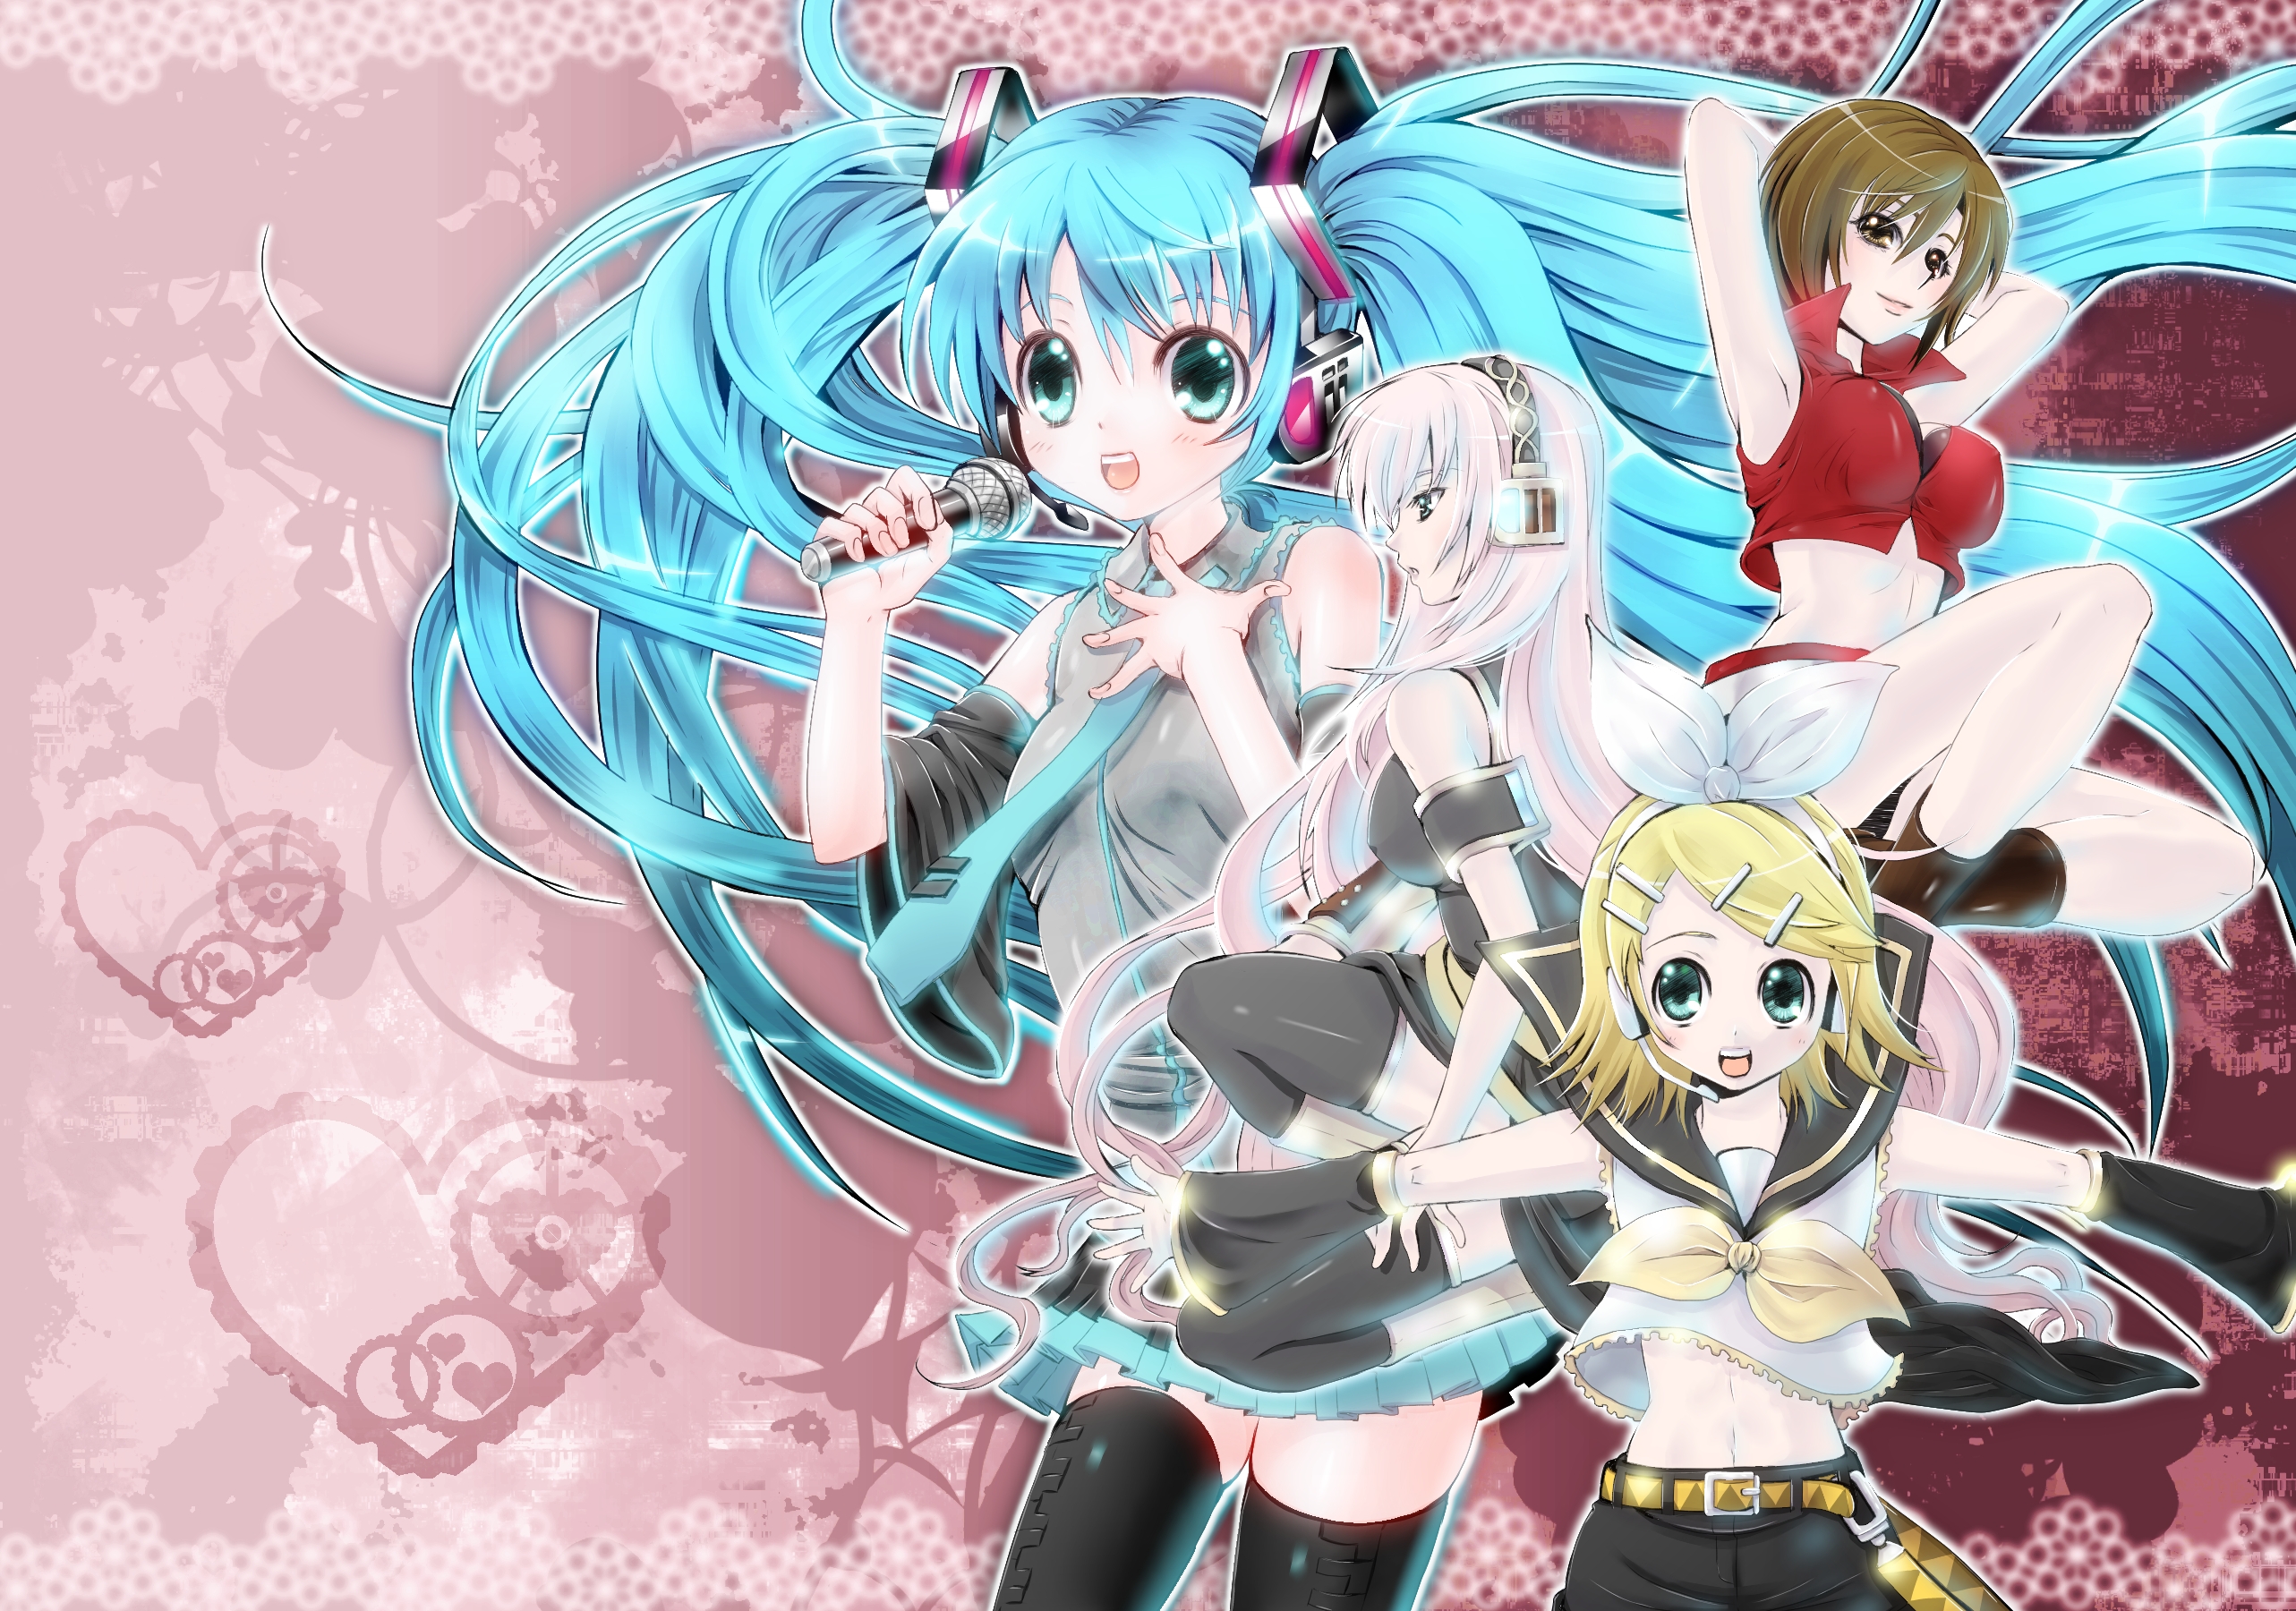 Descarga gratuita de fondo de pantalla para móvil de Vocaloid, Animado, Hatsune Miku, Rin Kagamine, Kaito (Vocaloid), Meiko (Vocaloid).